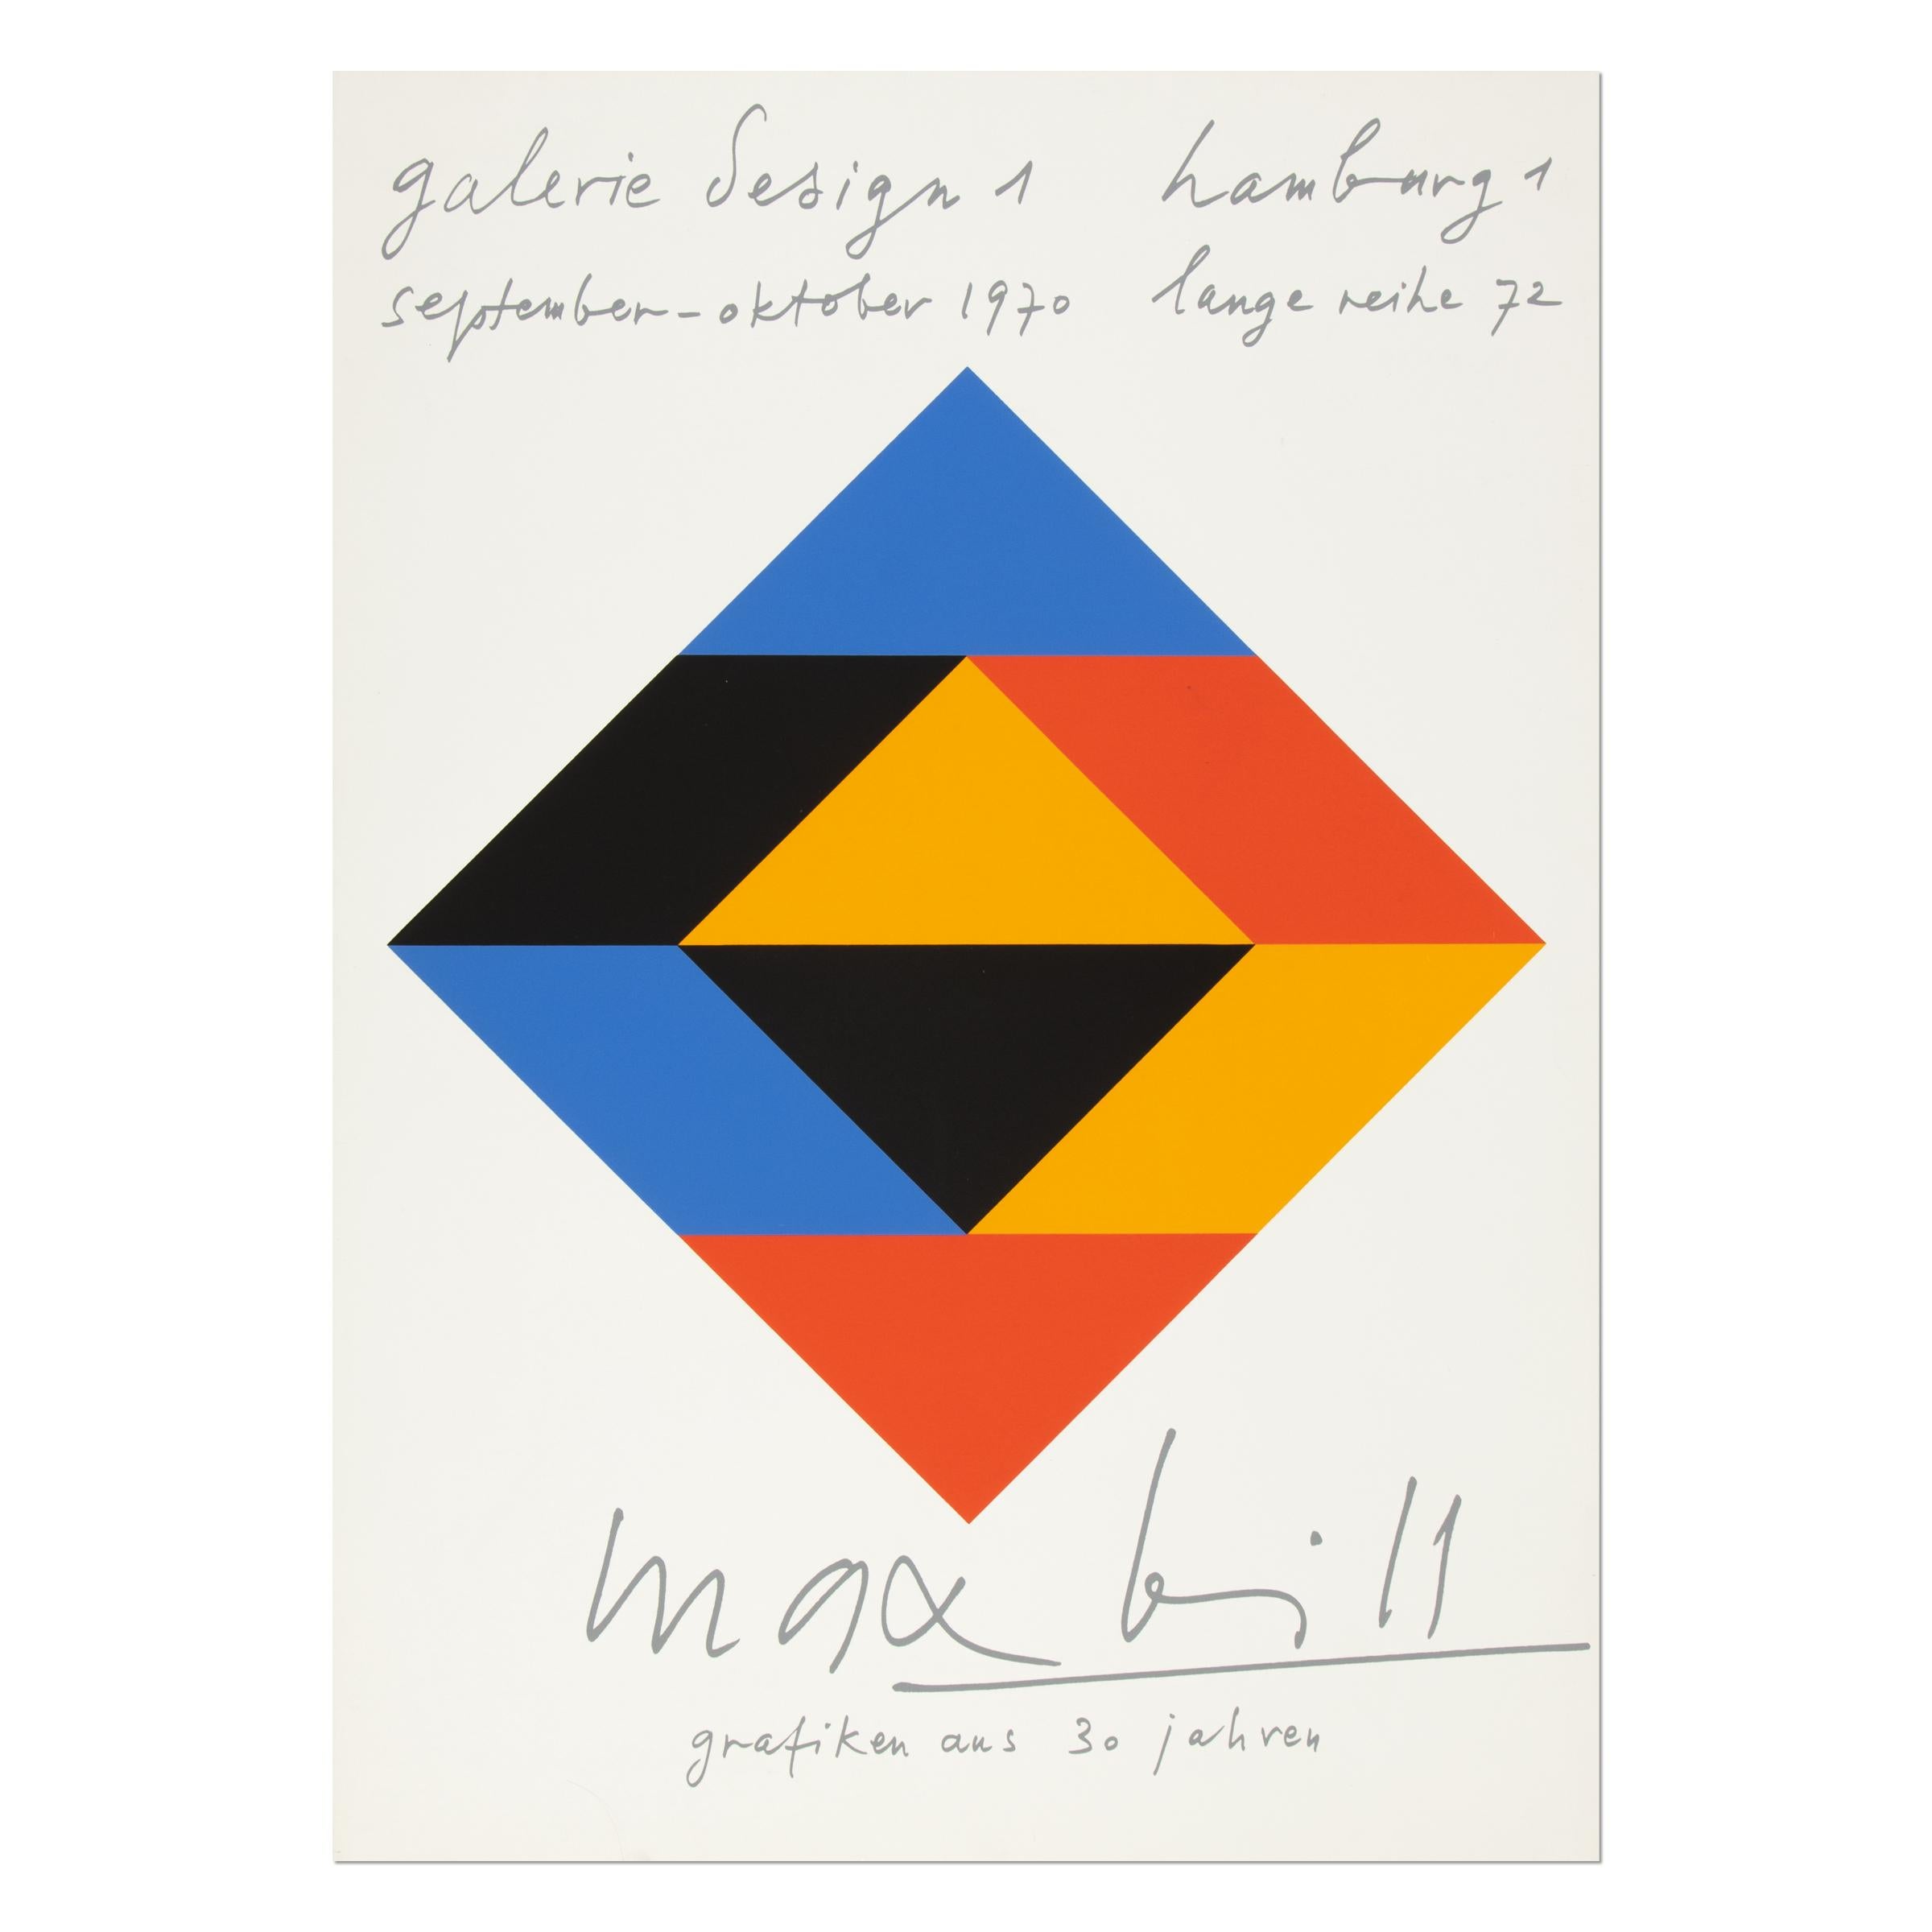 Orignal poster for Max Bill's exhibition "Grafiken aus 30 Jahren" at Galerie Design 1 in Hamburg in 1970.